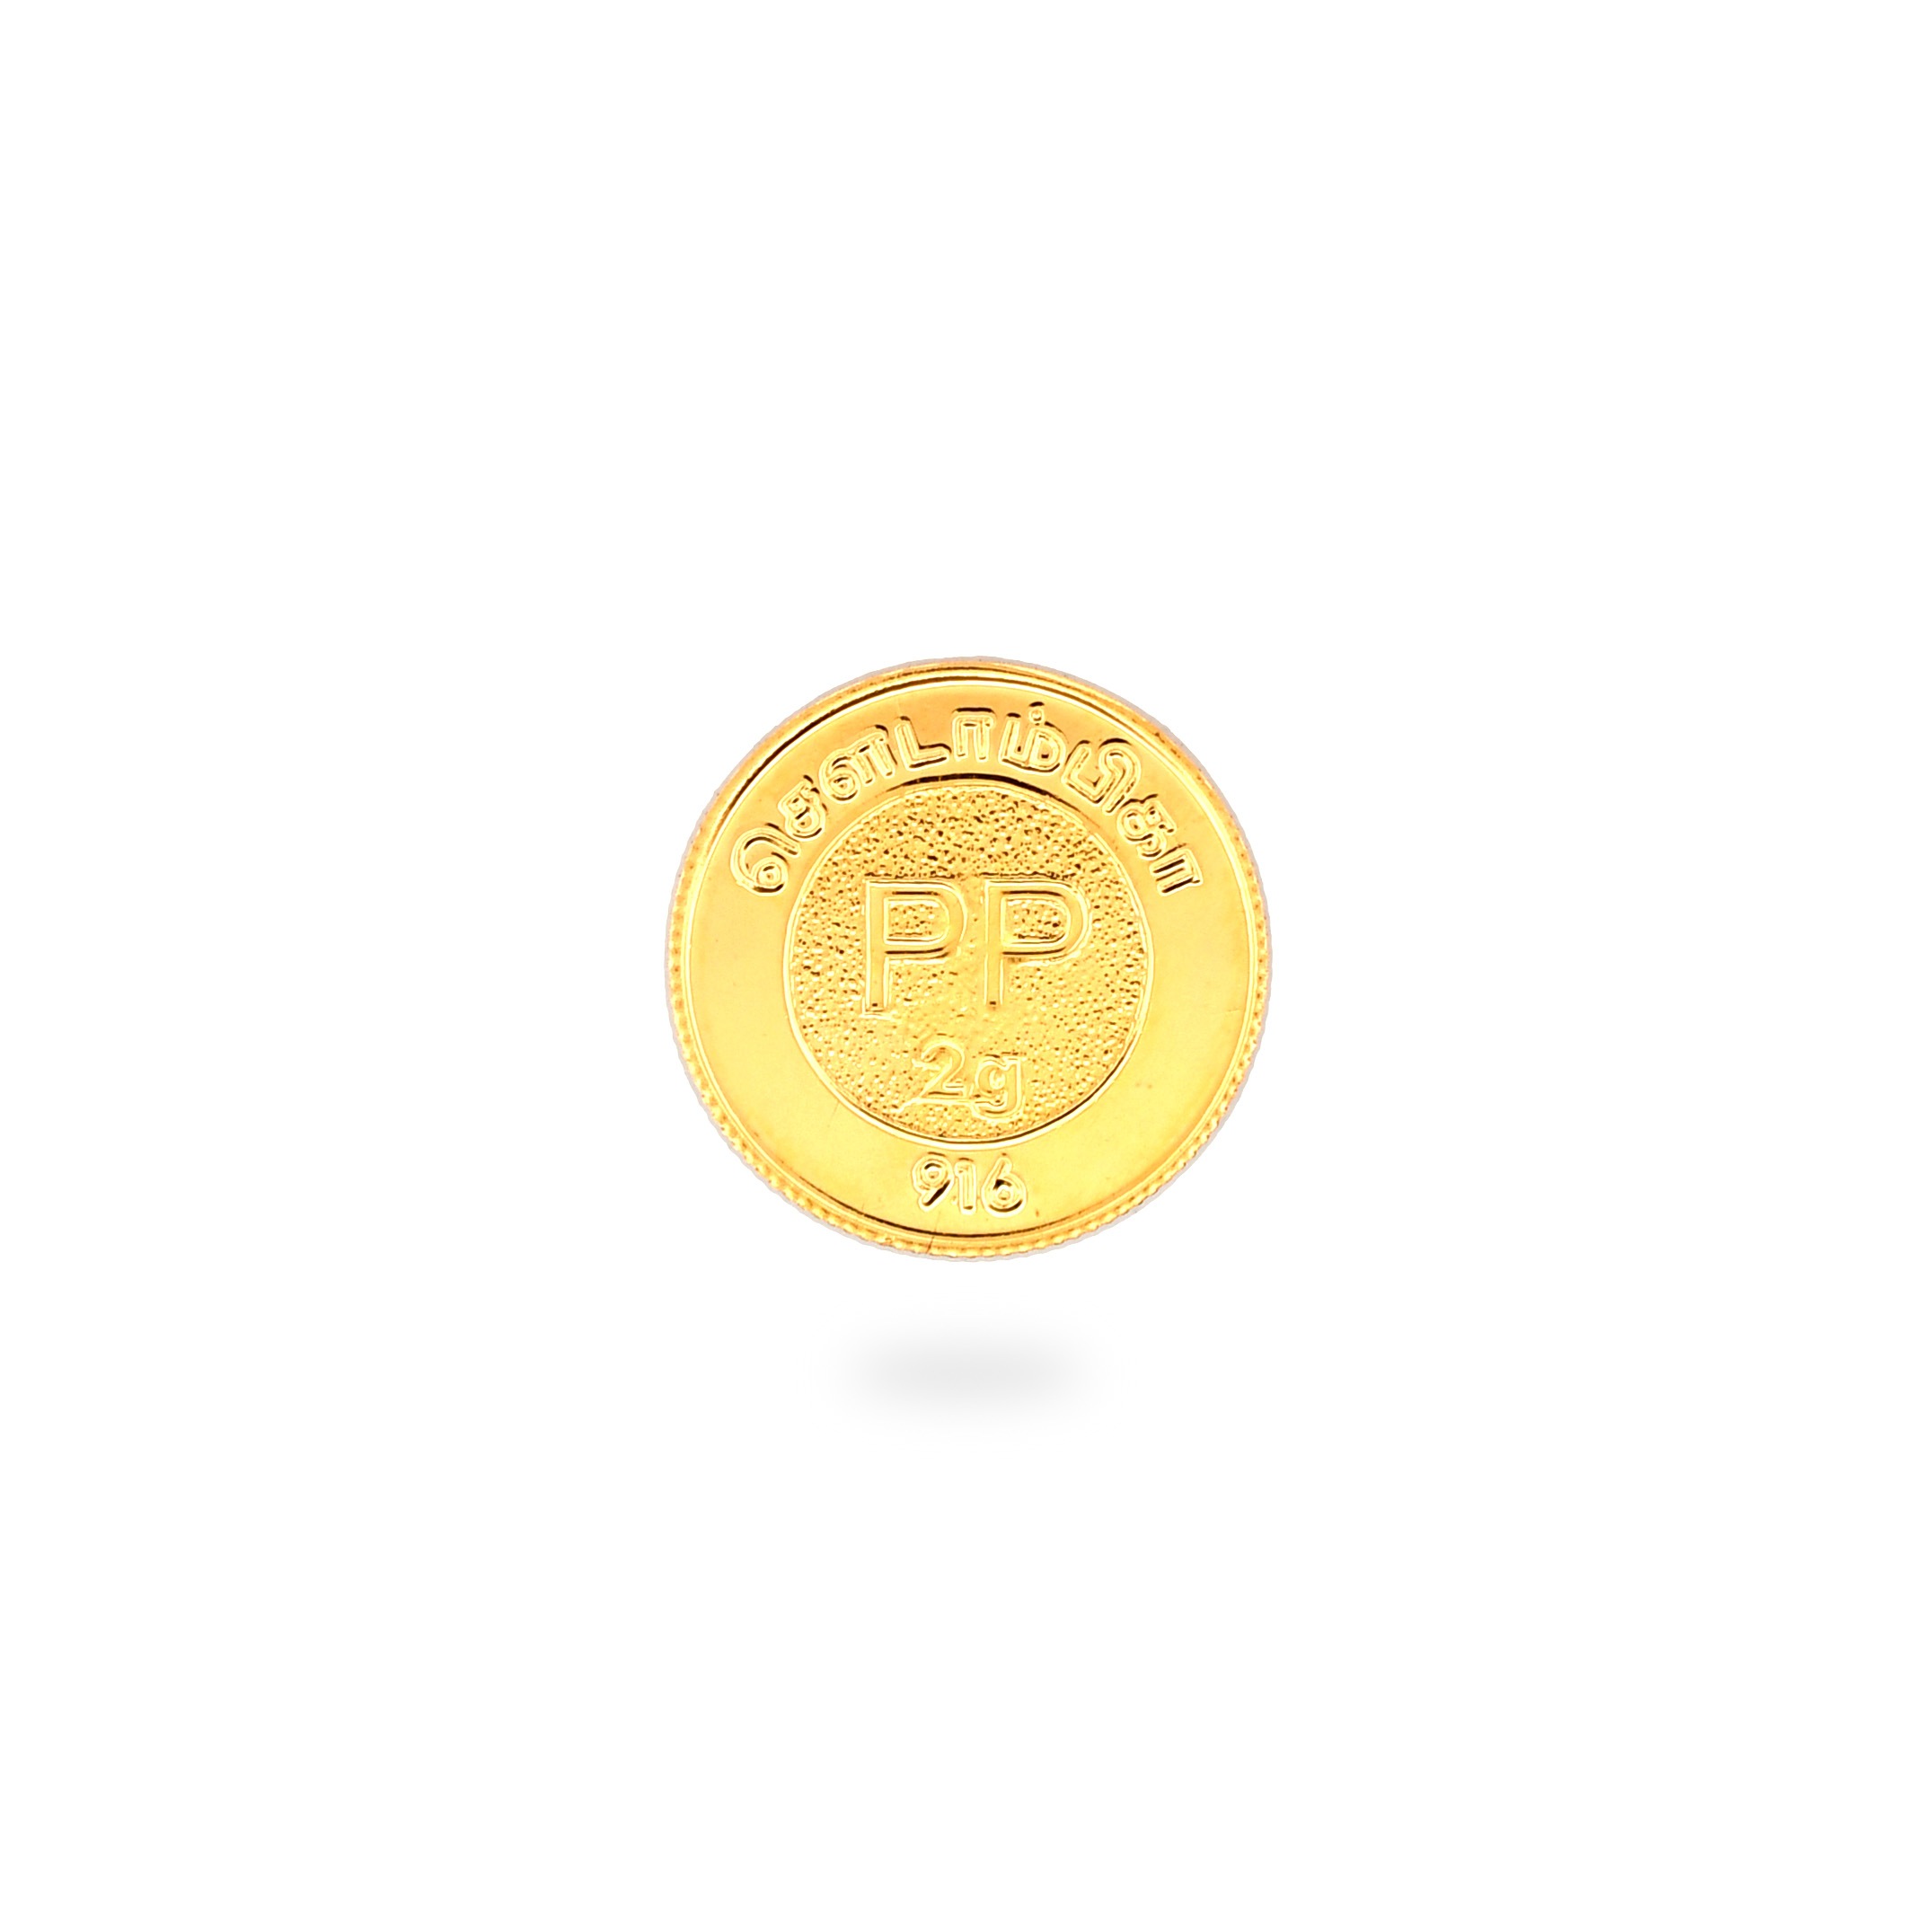 Hallmark 22kt Gold 2 Grams Coin